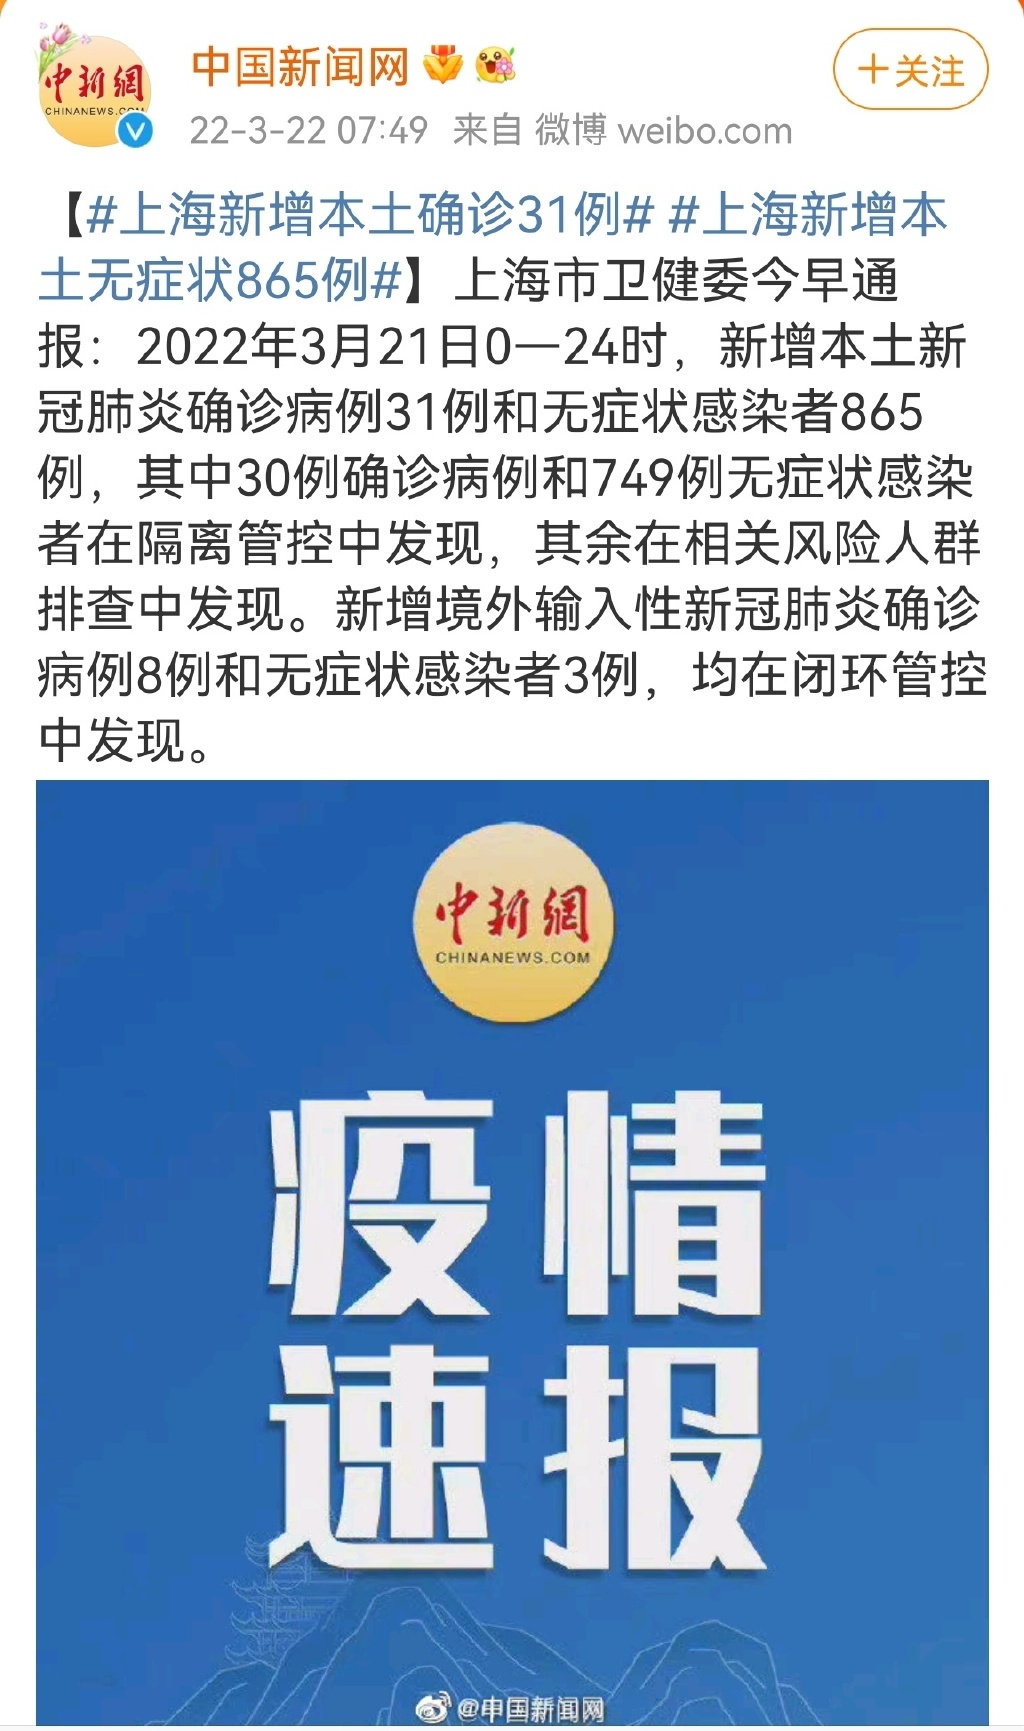 上海新增本土无症状865例 上海新增本土确诊31例